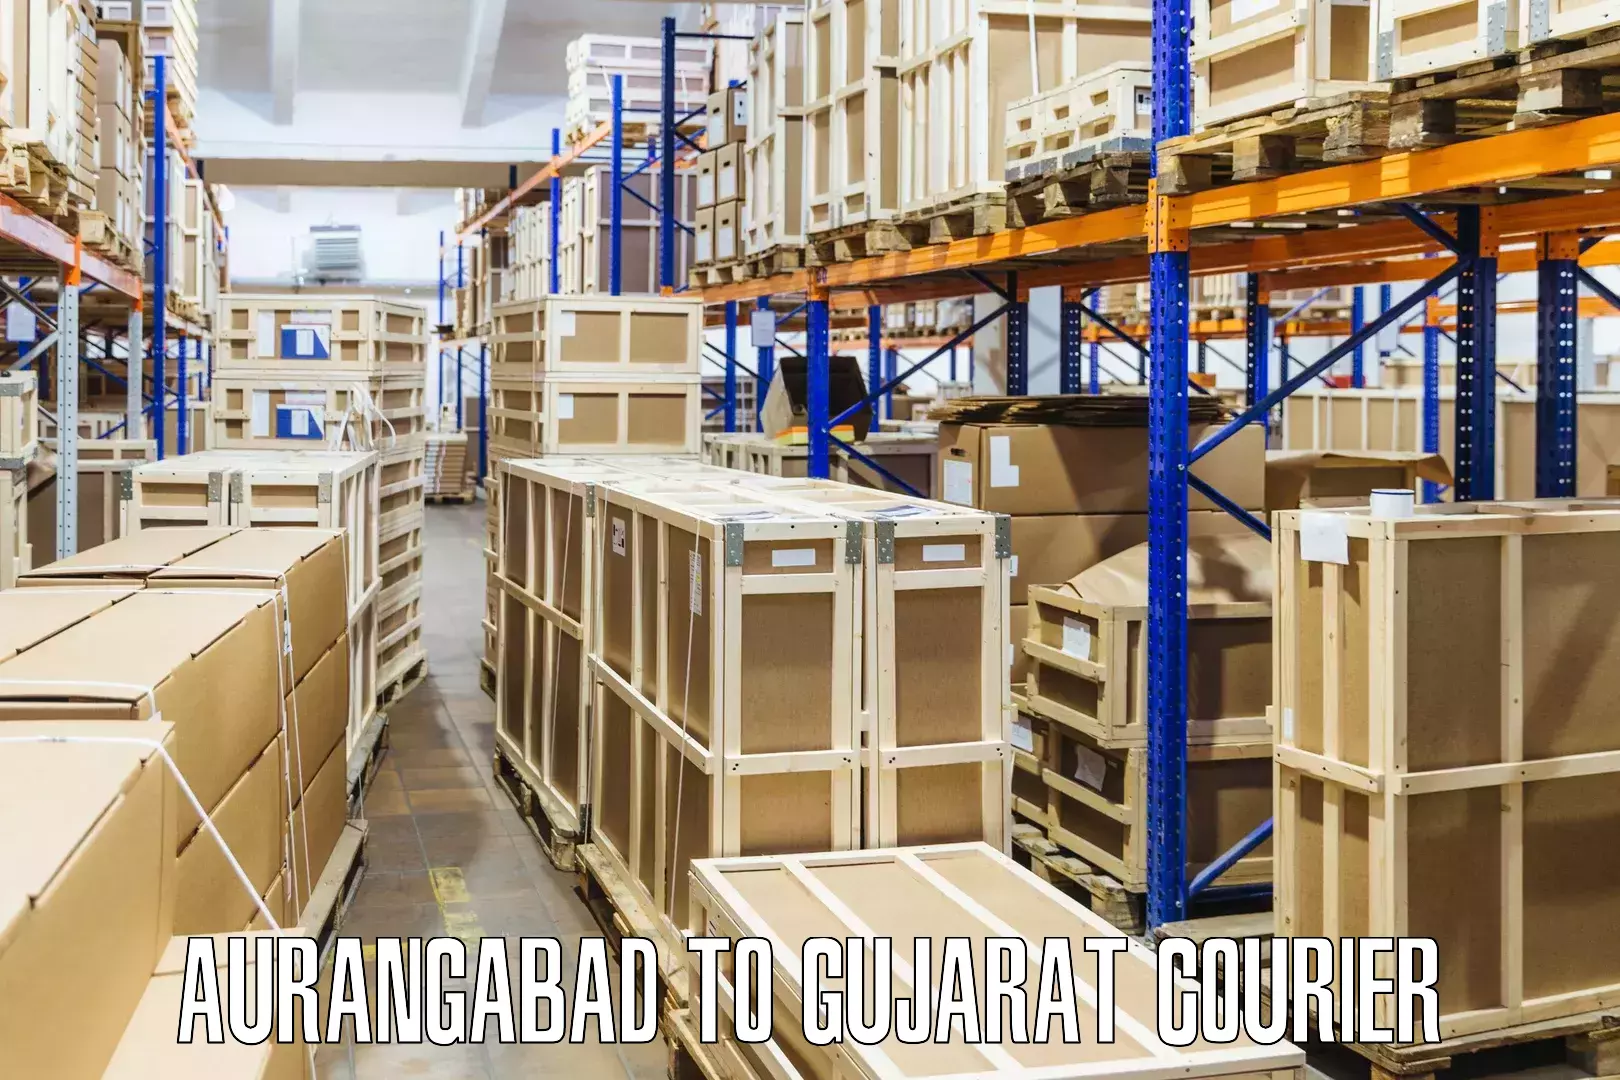 Courier dispatch services Aurangabad to Dabhoi